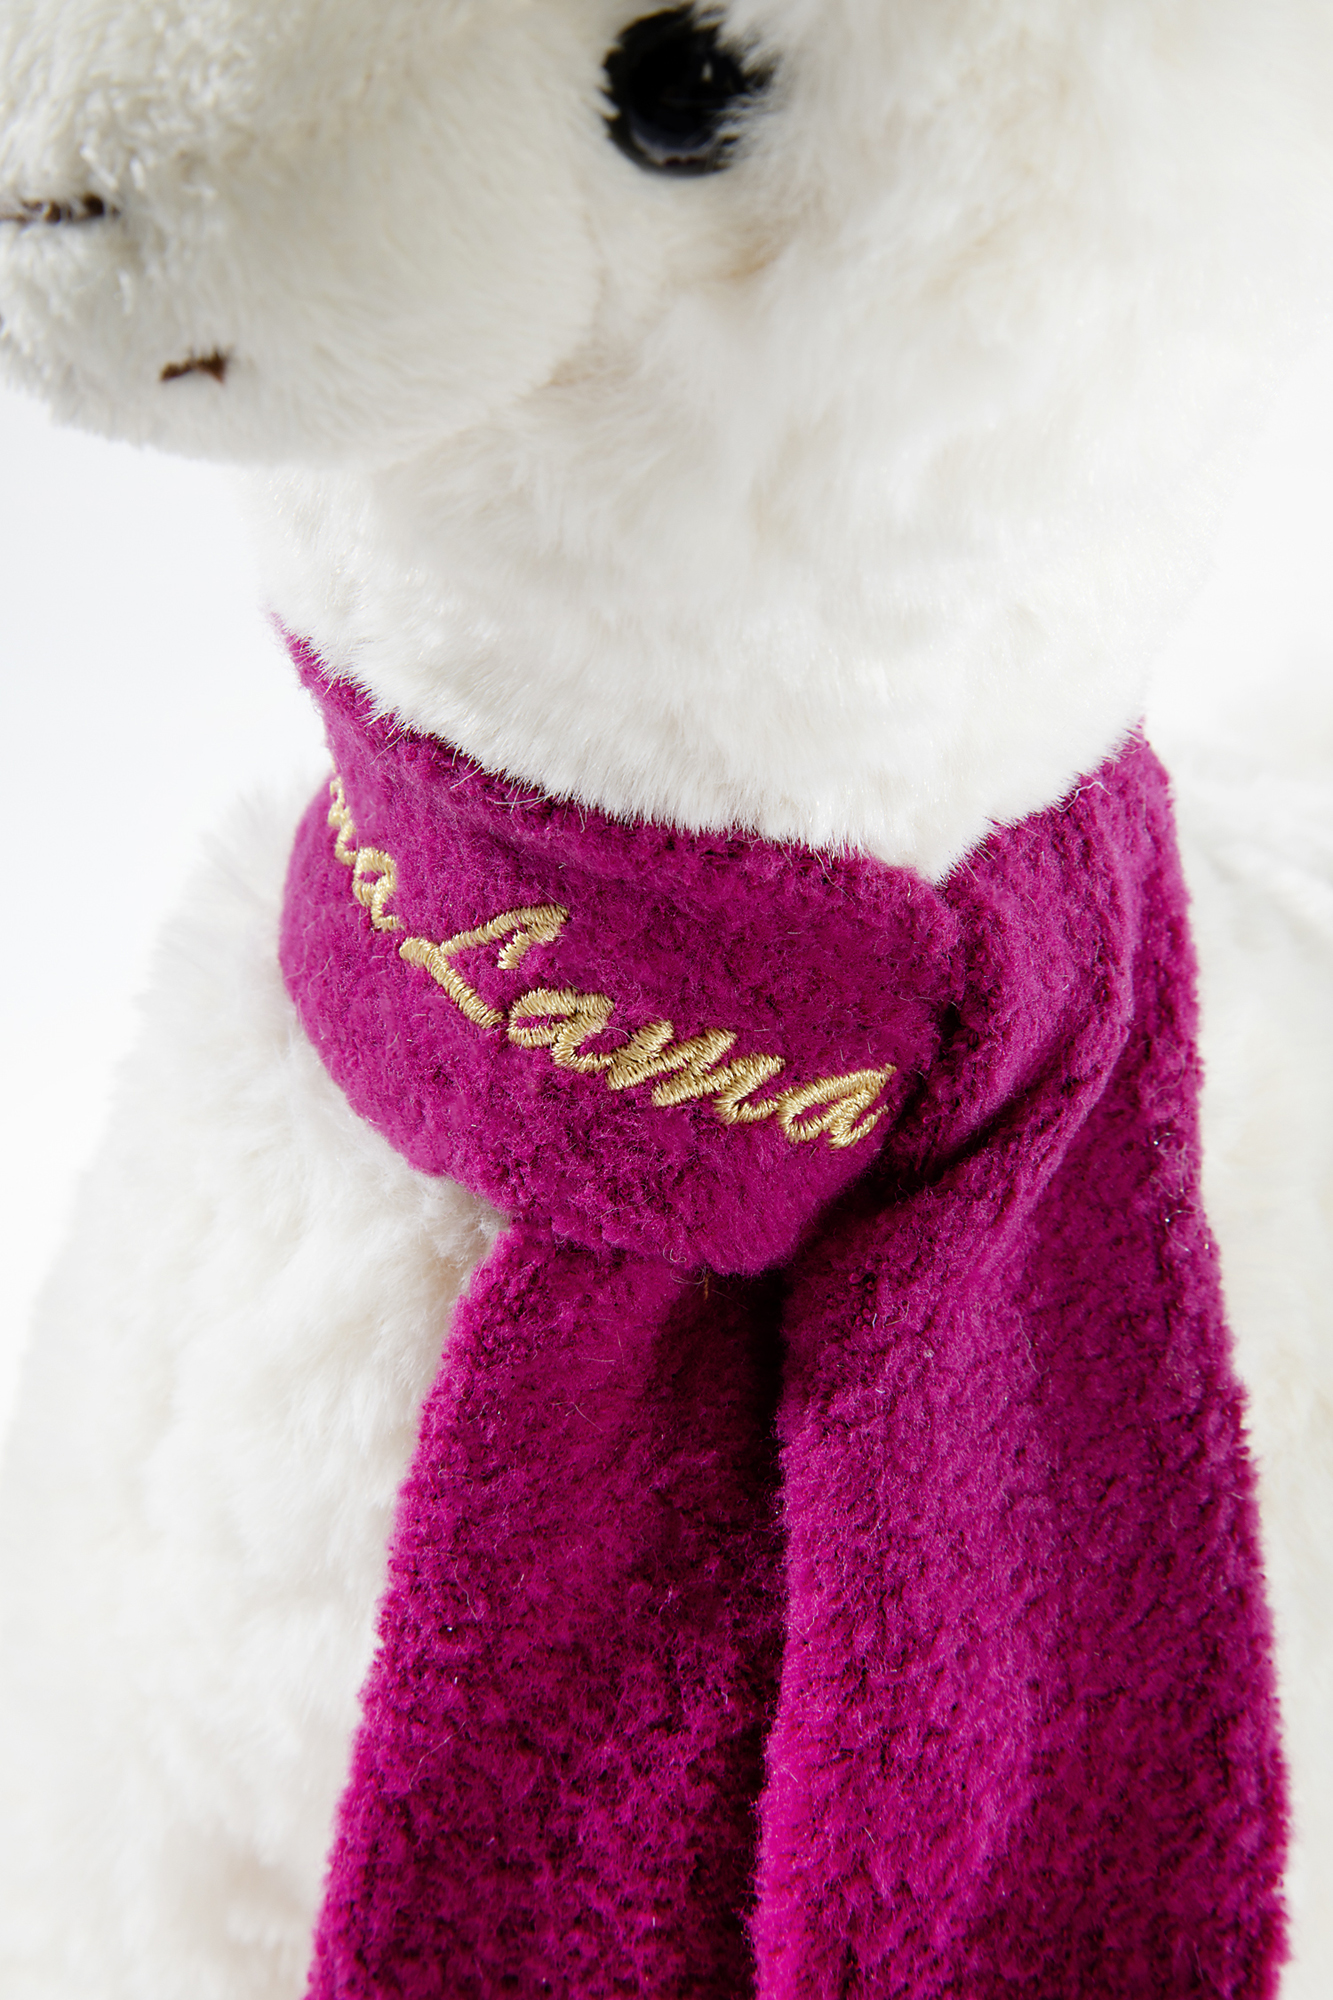 KUMA Lama "no drama lama" in der 35cm Ausführung mit Schal - Detailfoto